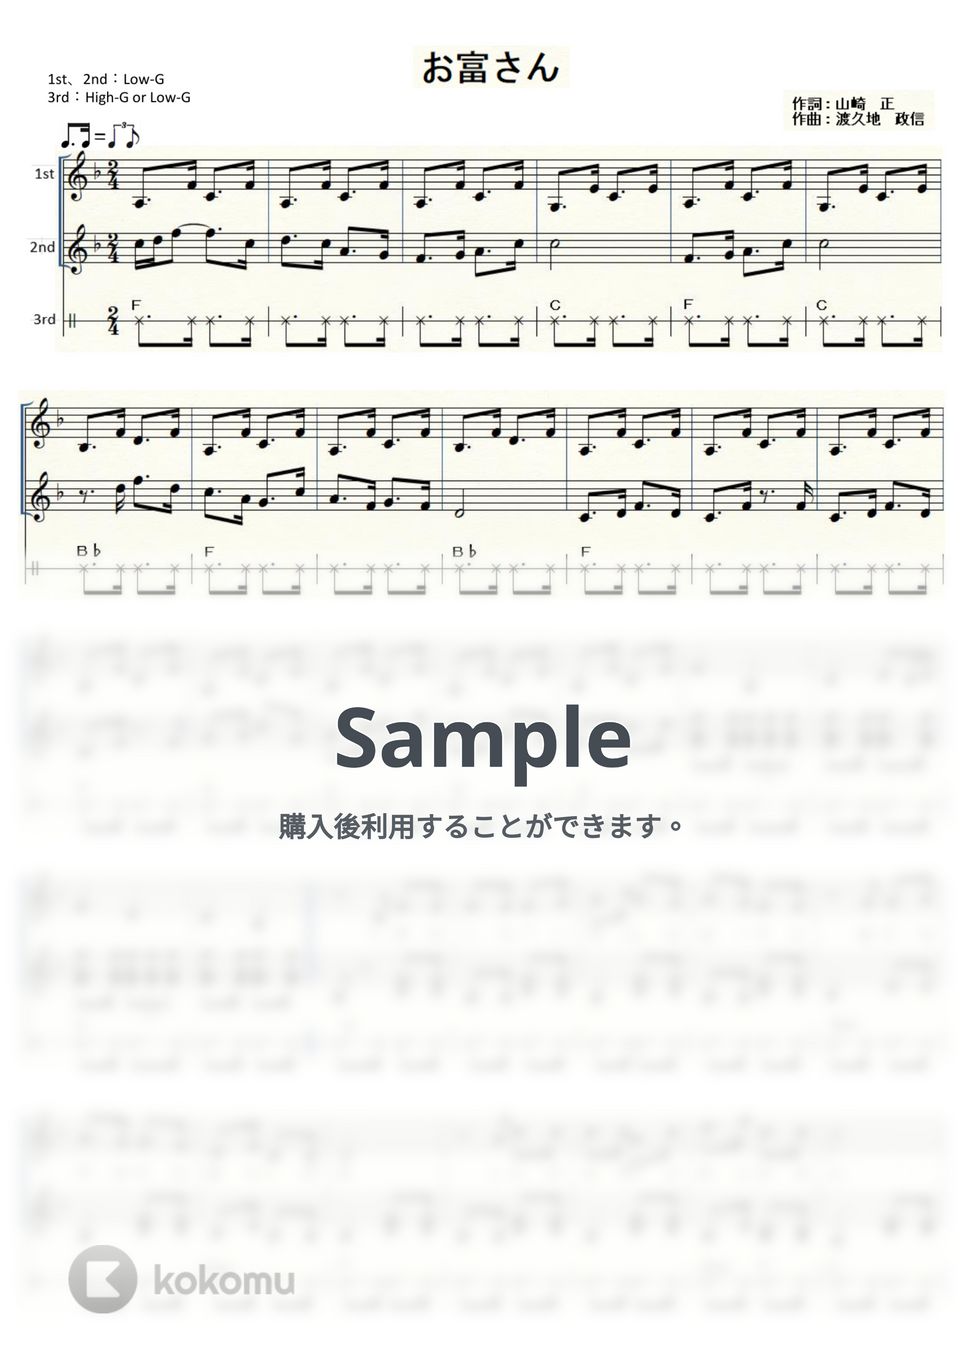 春日八郎 - お富さん (ｳｸﾚﾚ三重奏/中級) by ukulelepapa